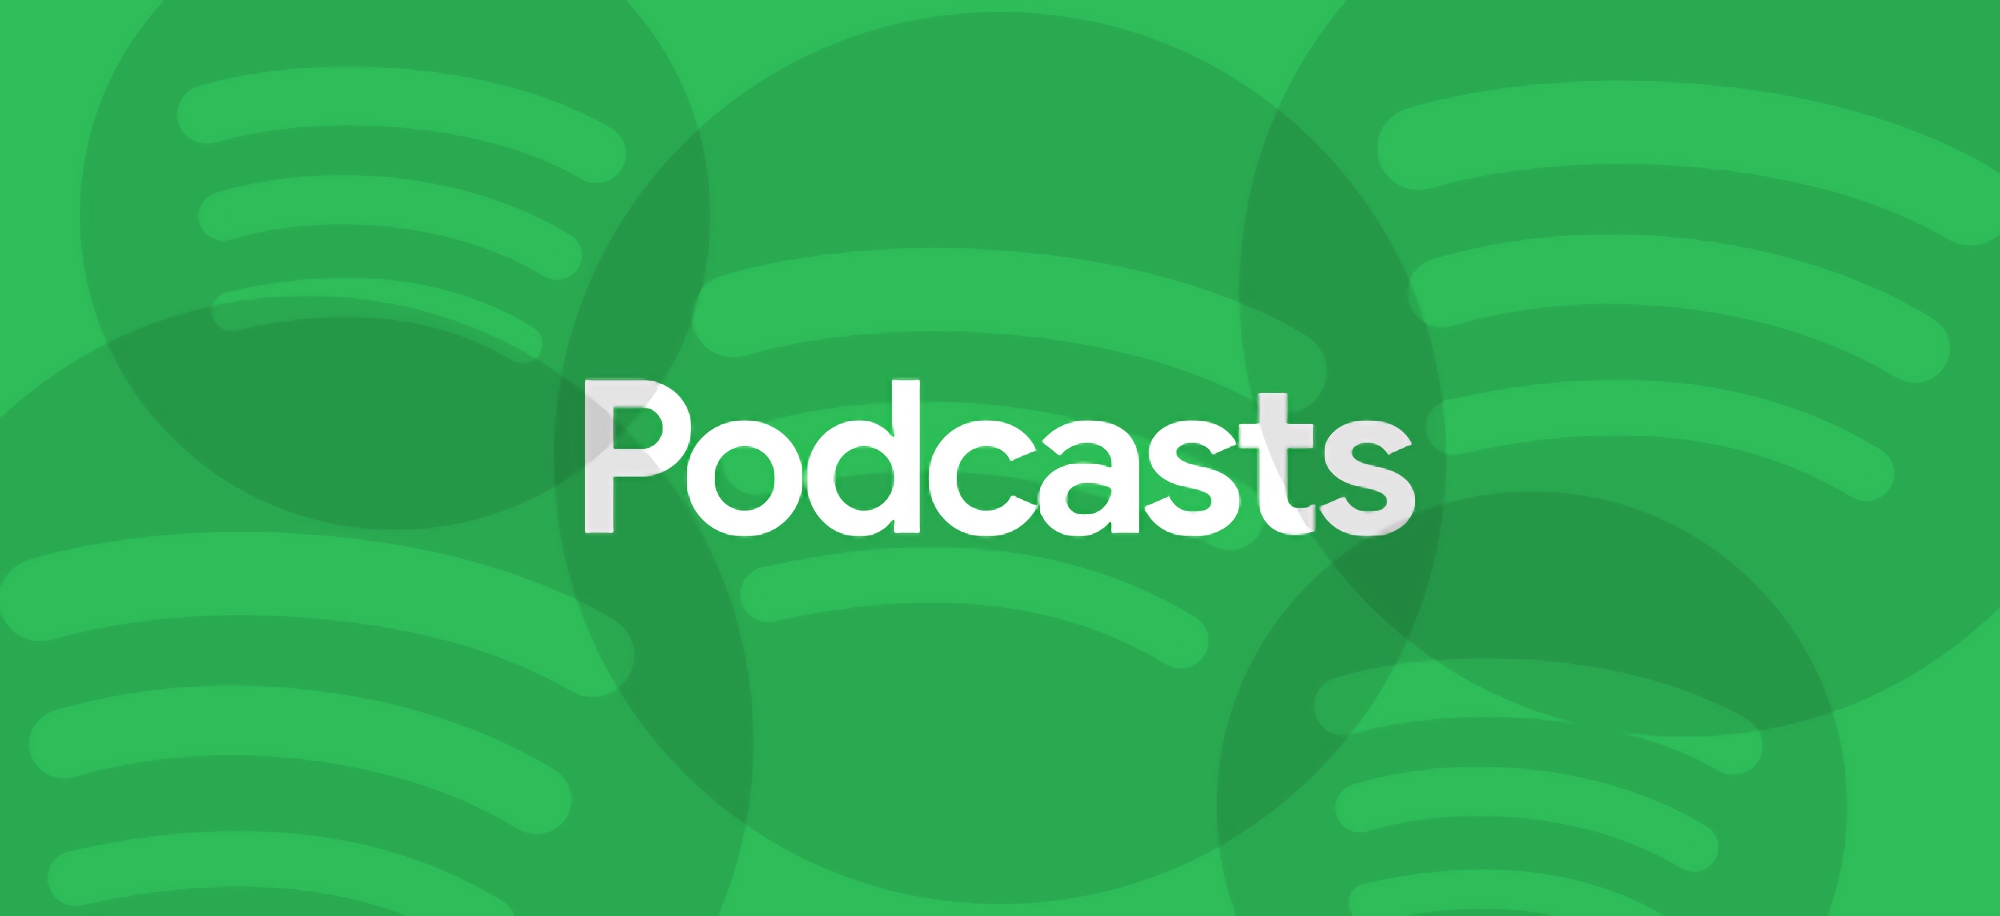 Gli utenti ucraini di Spotify hanno accesso ai podcast